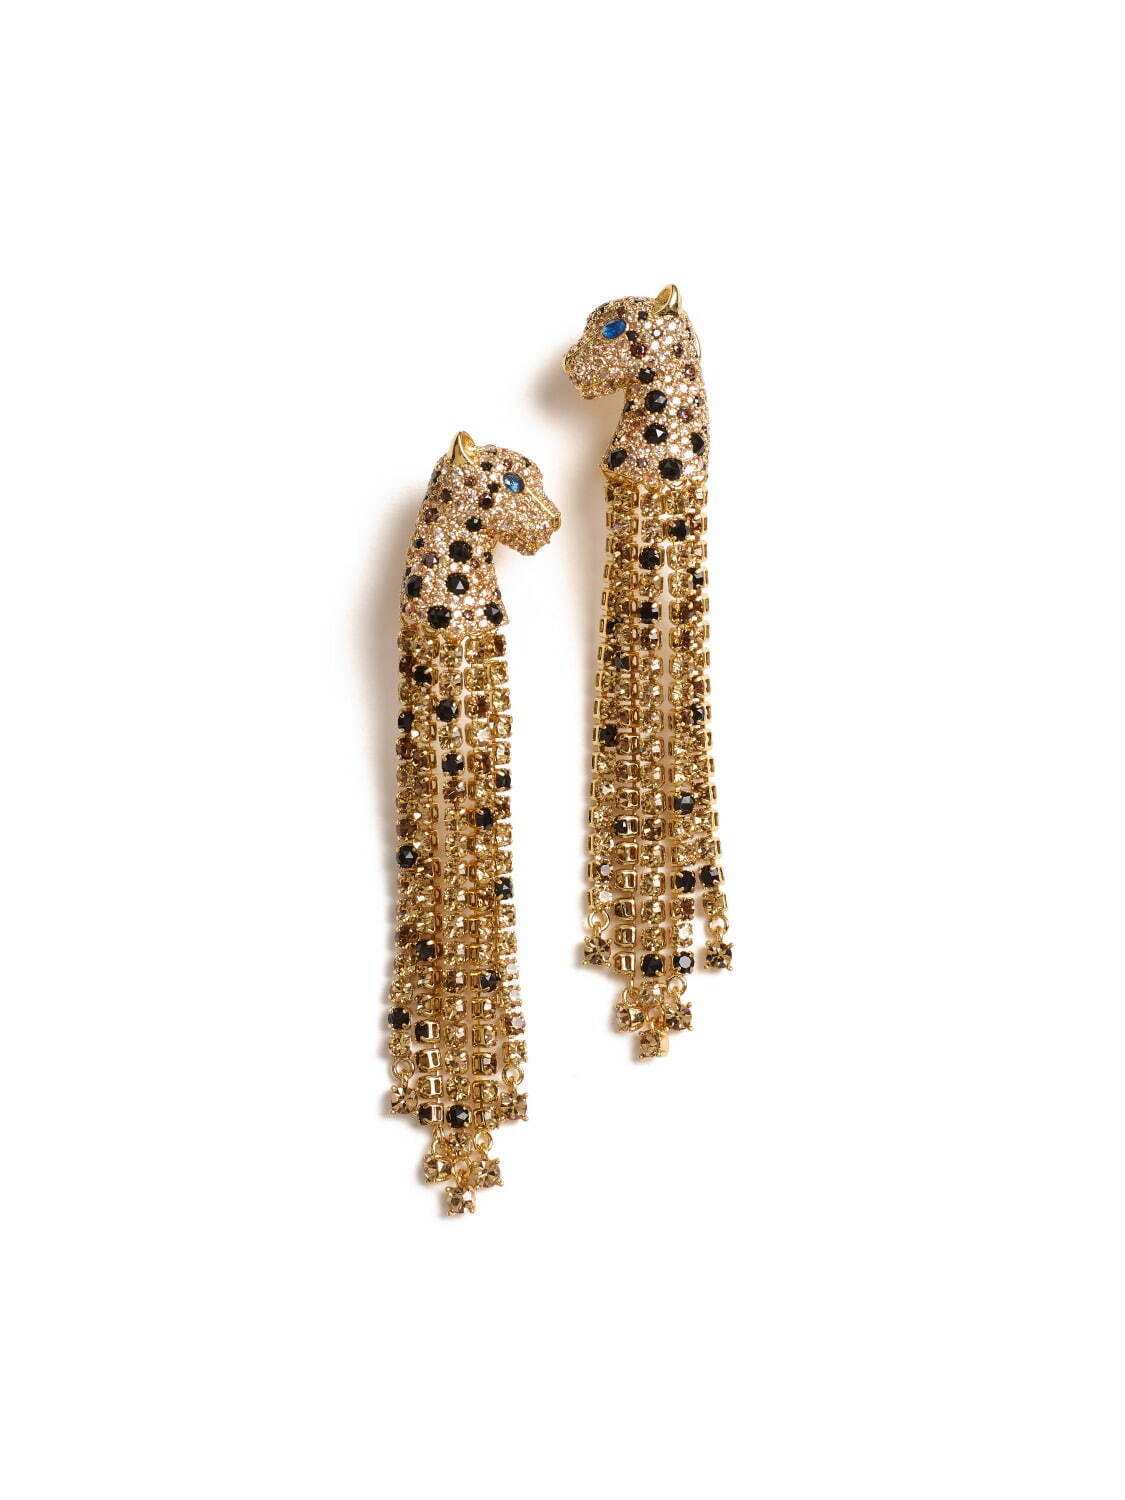 fierce leopard linear earrings 27,500円
※8月末発売予定